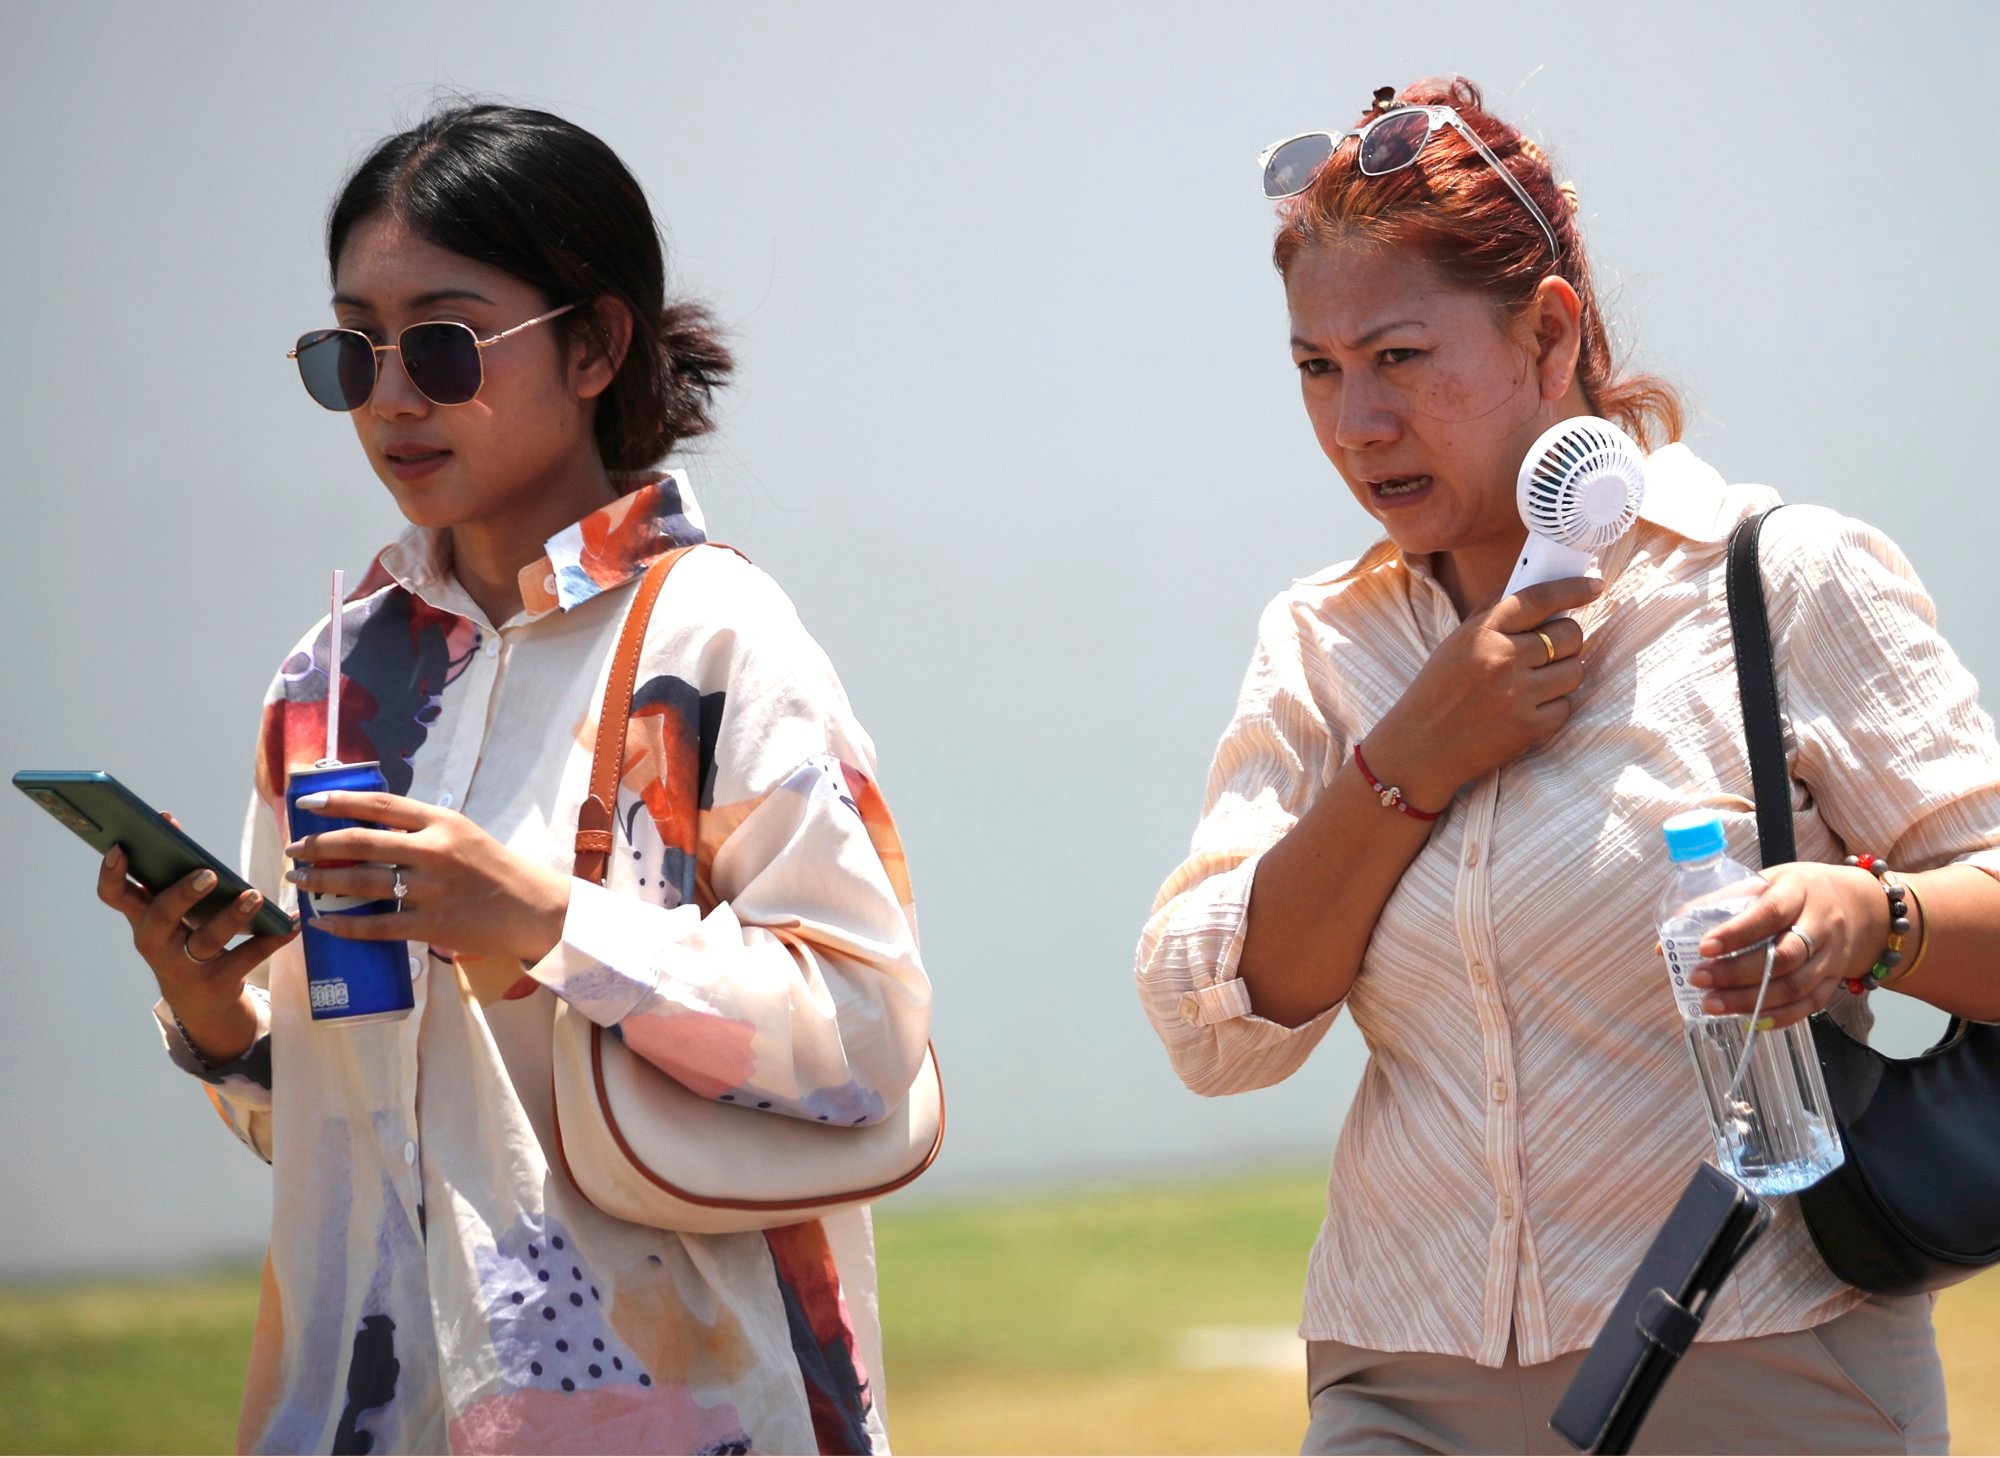 Ola de calor en el sudeste asiático: el índice de calor en Tailandia supera los 52 grados mientras Filipinas corre el riesgo de “sobrecargar” los sistemas eléctricos.